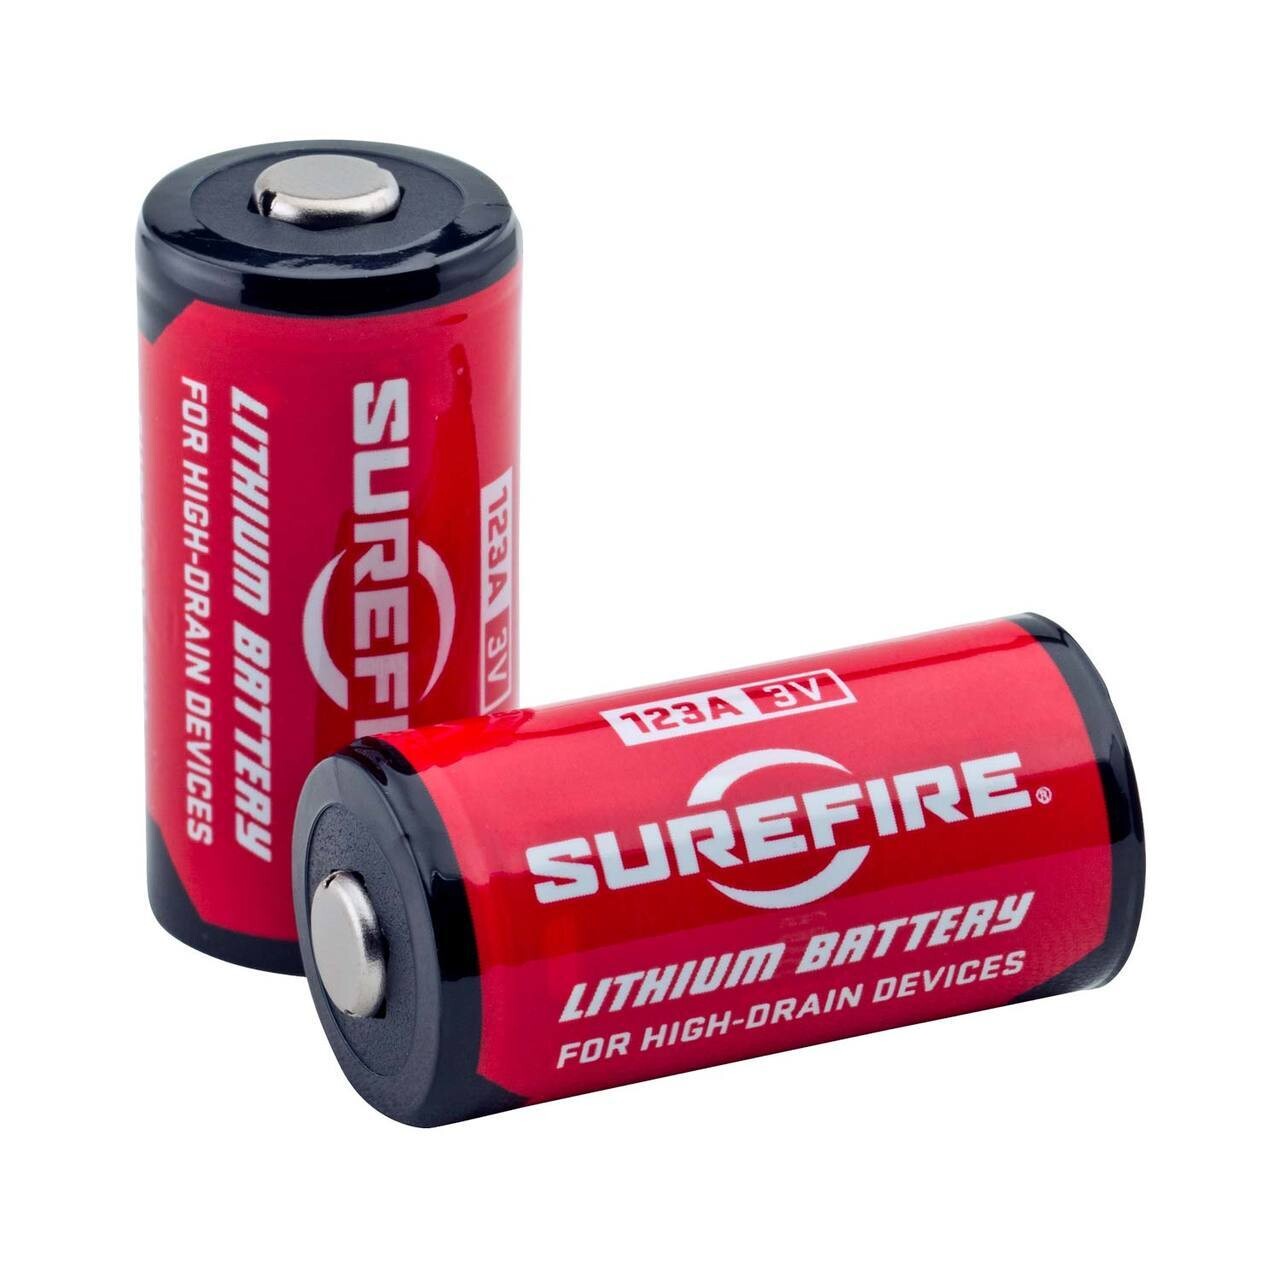 Surefire 123A Battery